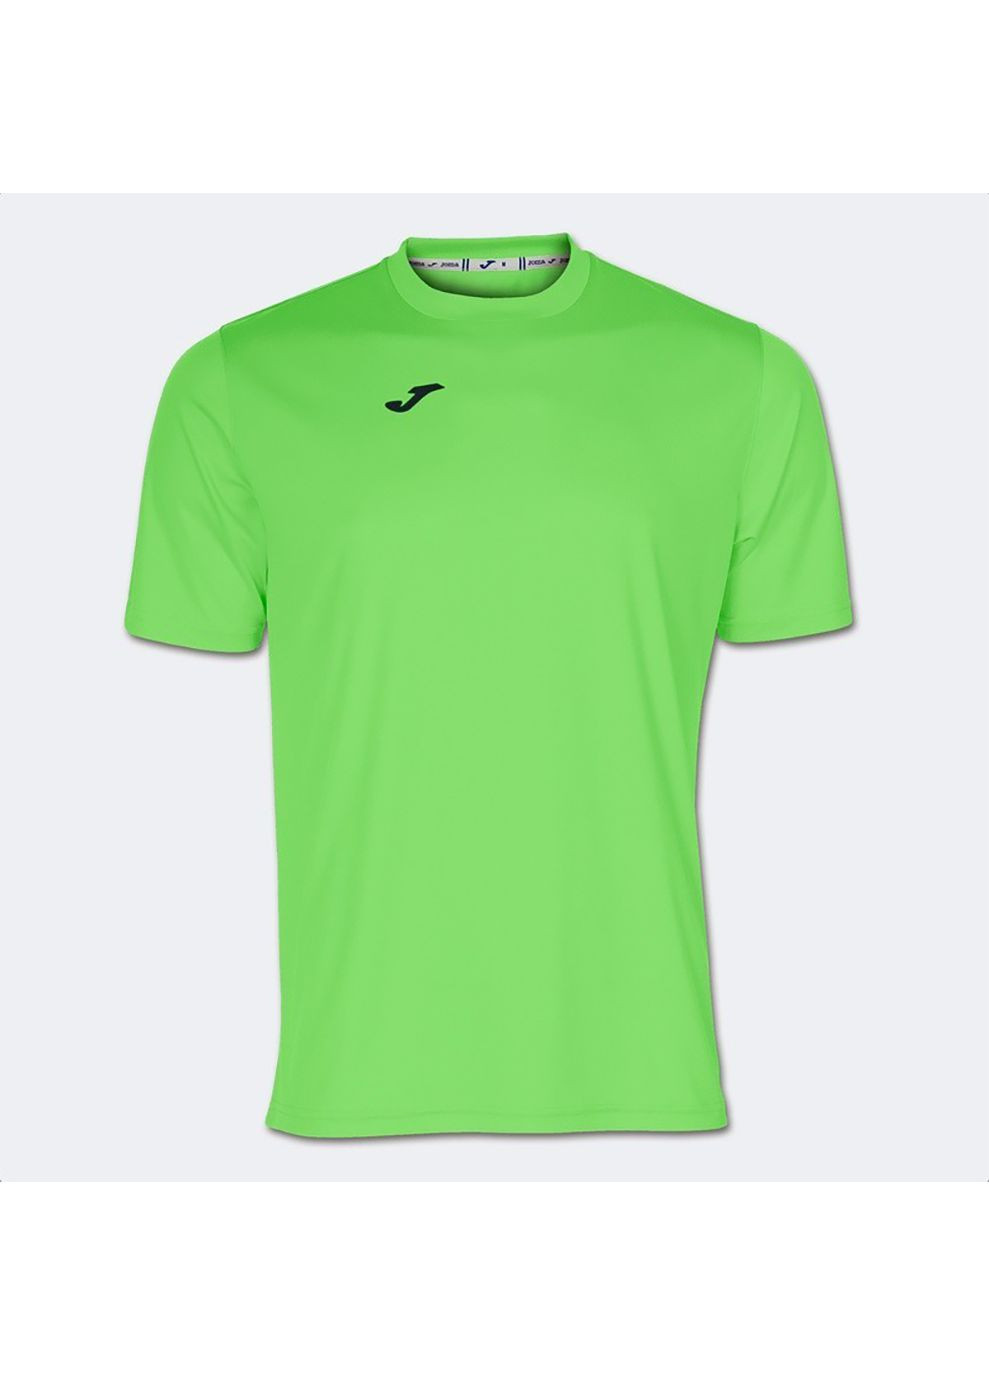 Зеленая демисезонная футболка combi зеленый дет Joma